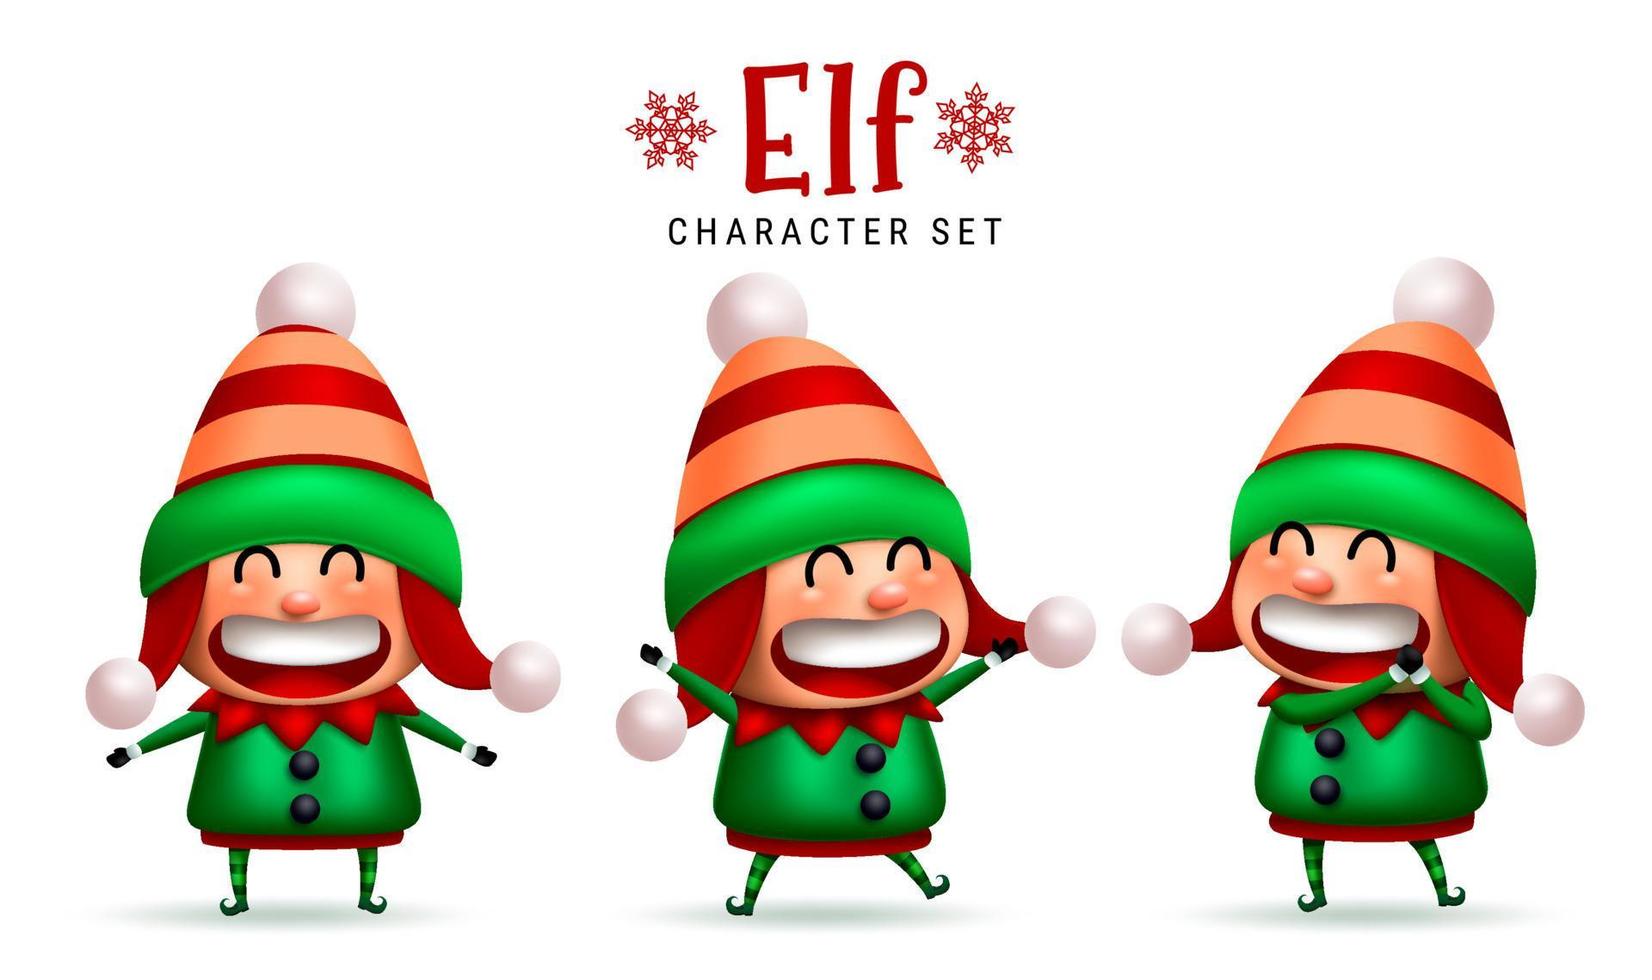 insieme di vettore dei caratteri di natale dell'elfo. simpatico personaggio di elfi con espressione felice, allegra e allegra isolato in uno sfondo bianco per il design della collezione natalizia per bambini. illustrazione vettoriale.